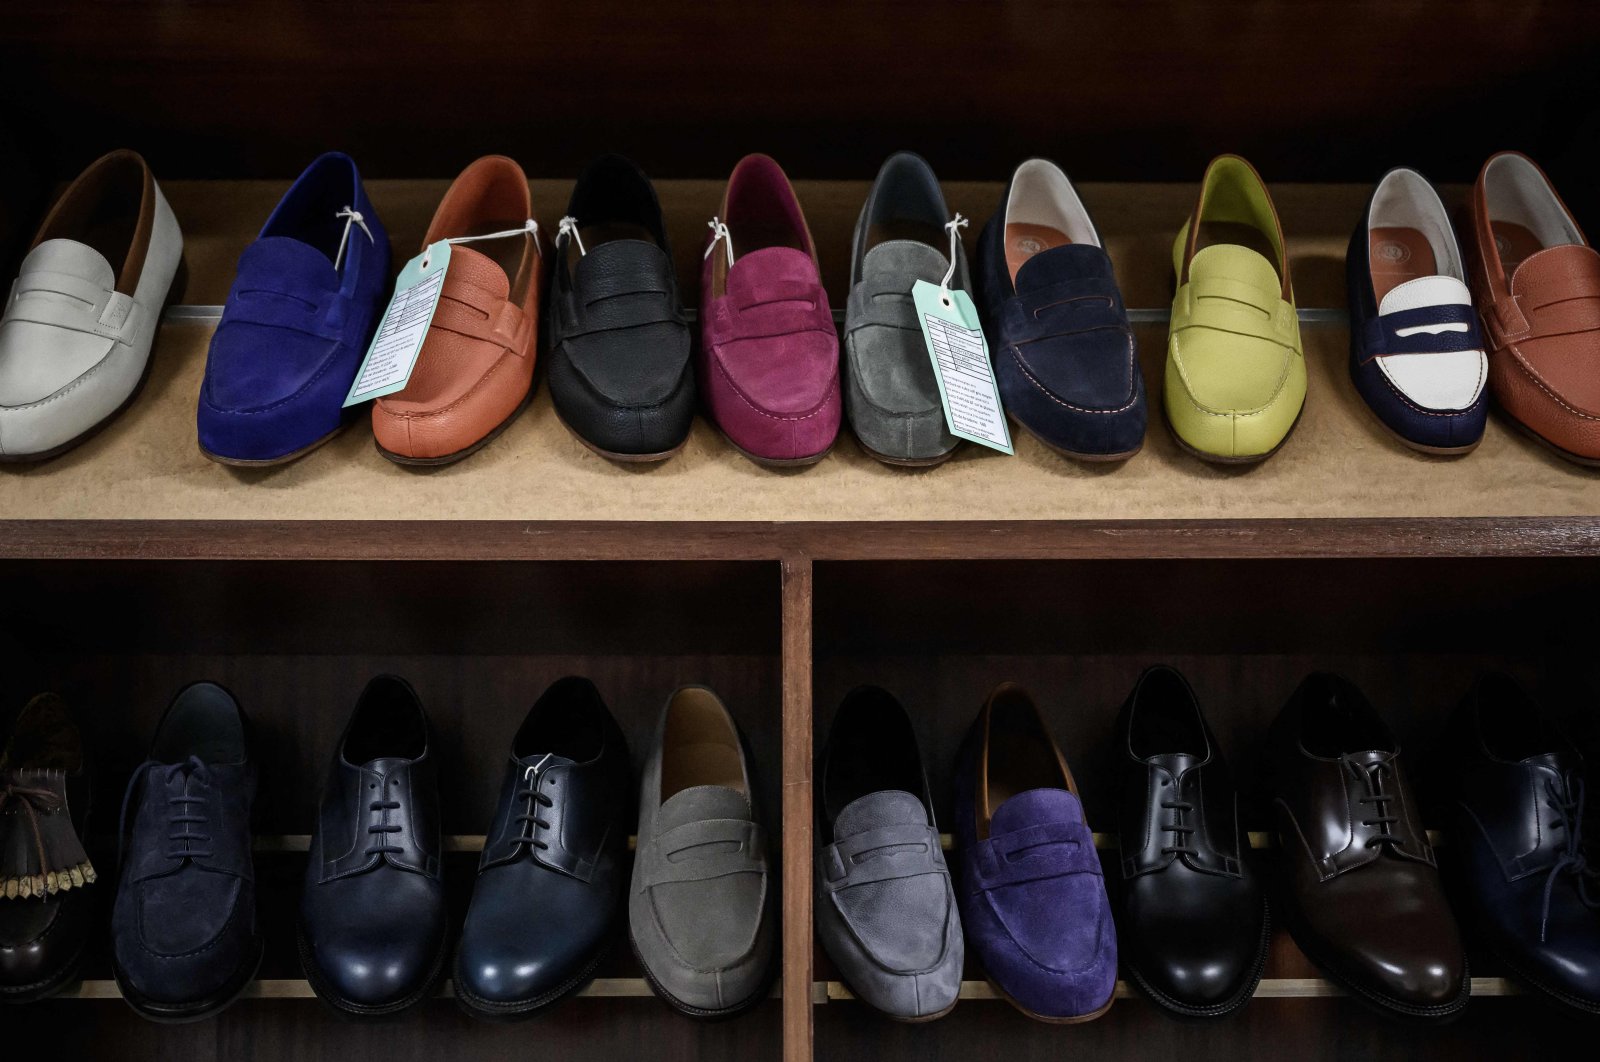 Sepatu formal, loafer, moccasin menyelinap melewati popularitas sepatu kets